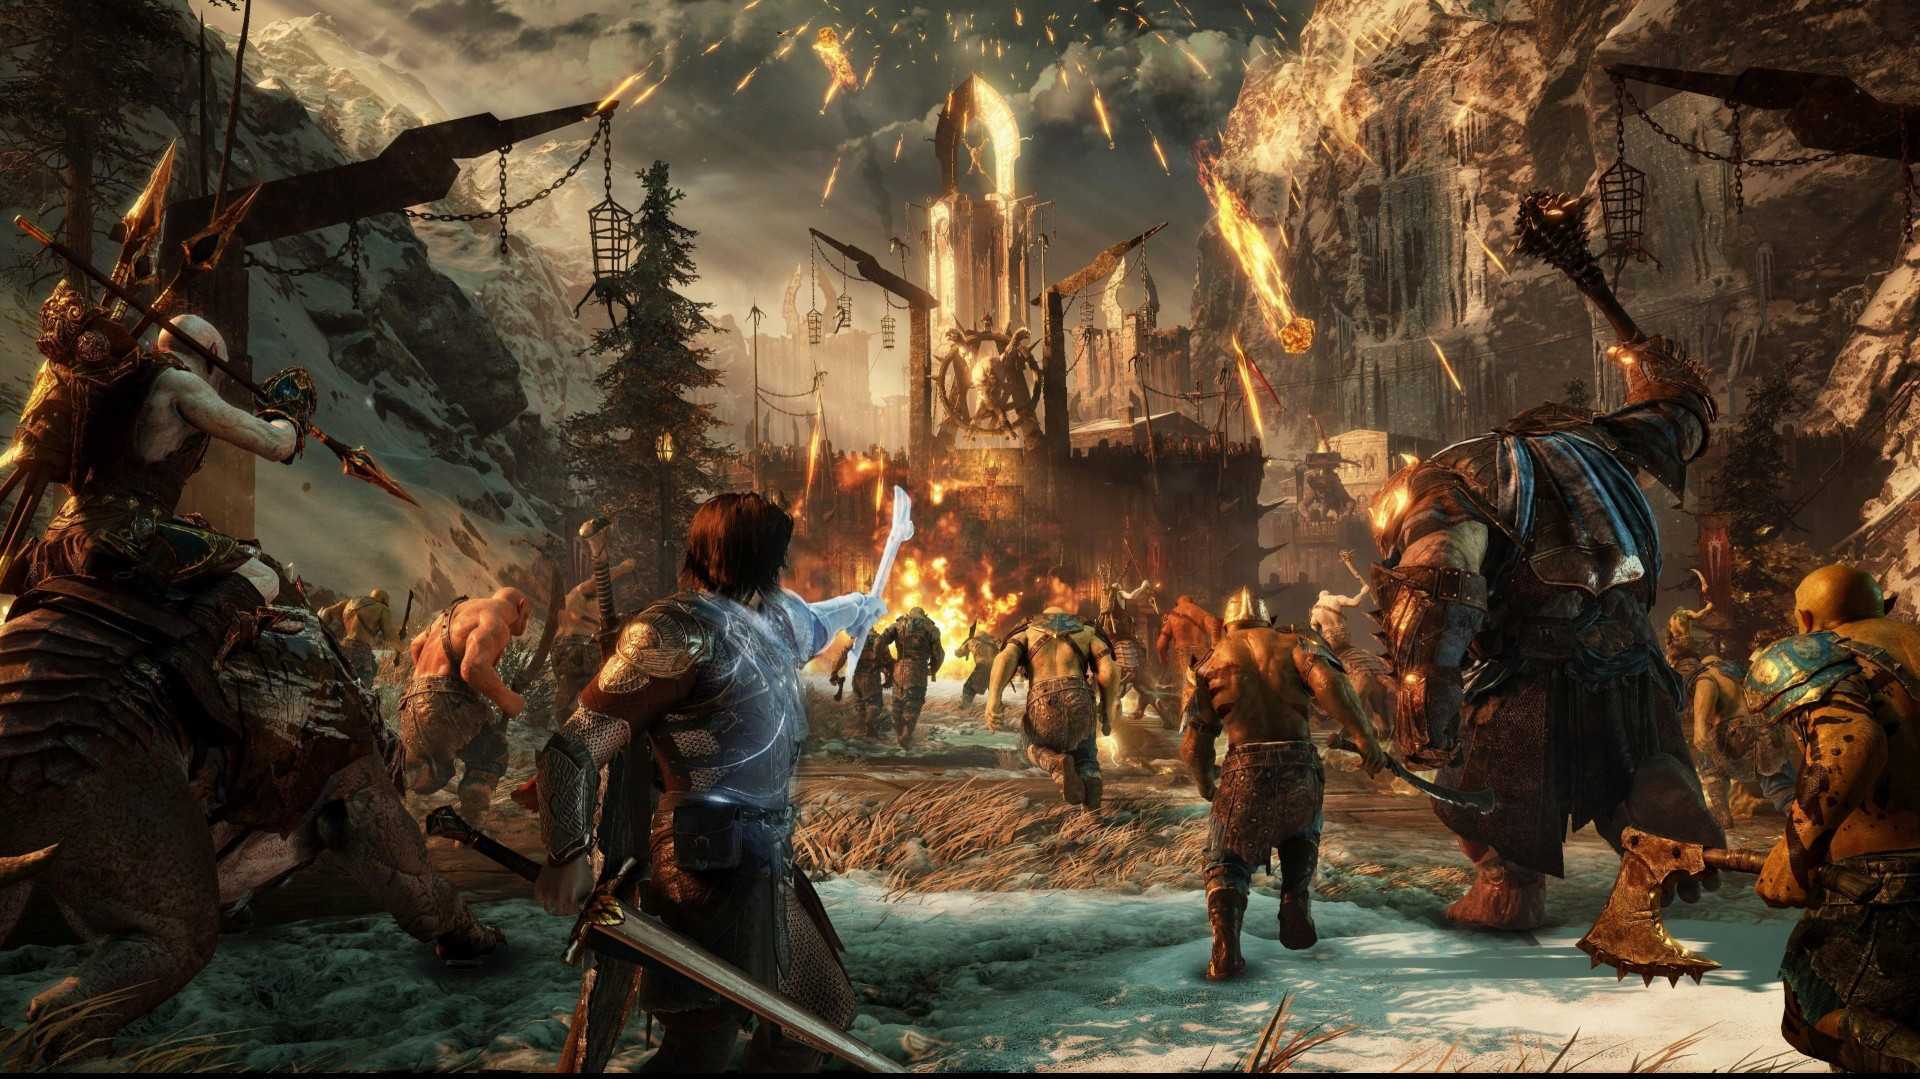 Список всех достижений и трофеев в Middle-earth: Shadow of War в том числе секретные с описанием, как получить каждое из них на PC, PS4 и Xbox One